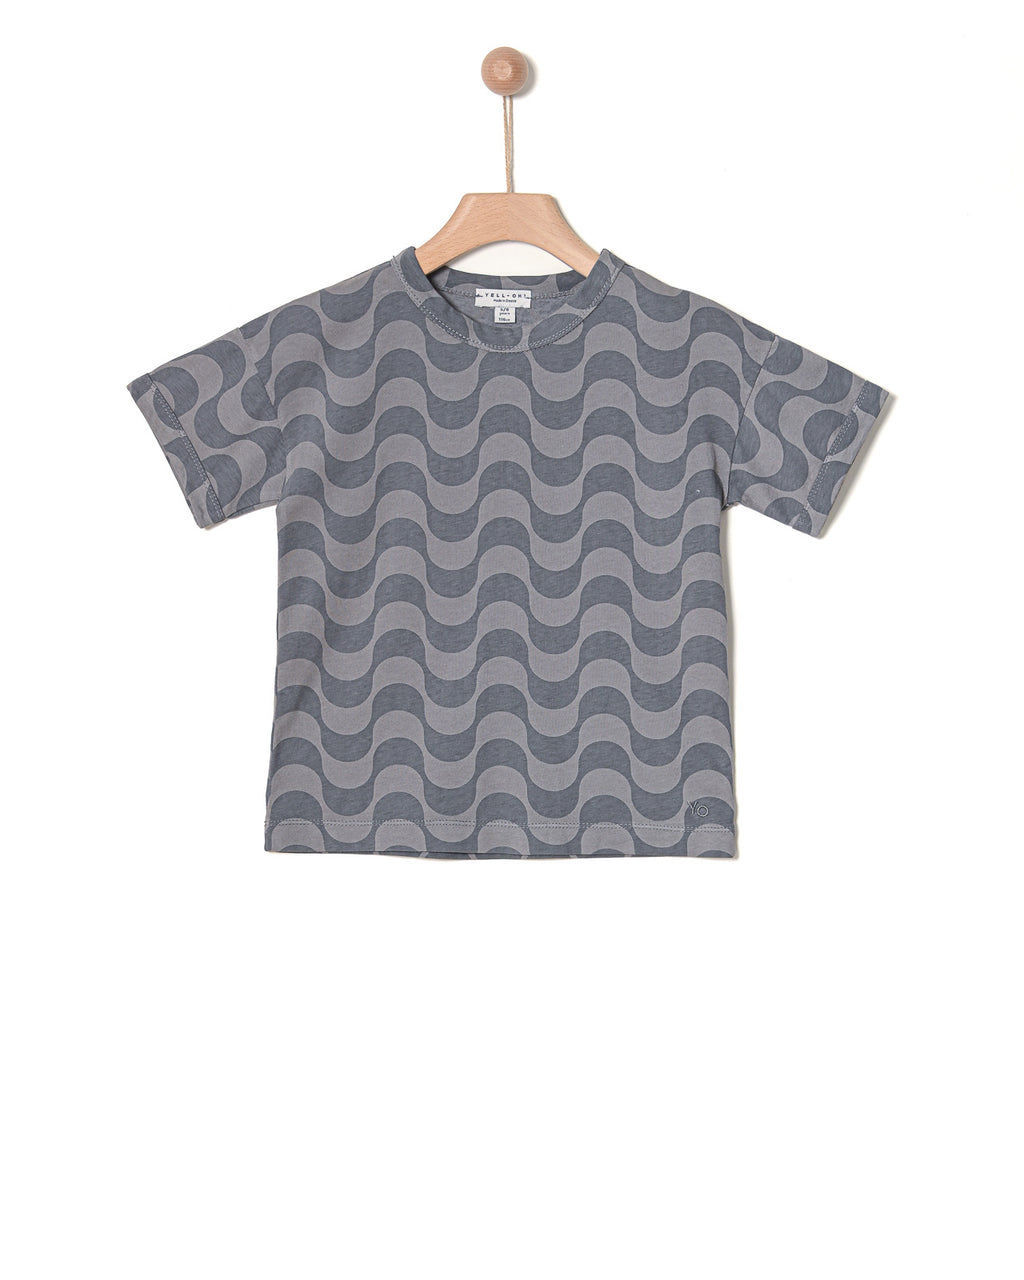 Yell-Oh Kids T- Shirt  Waves - Licorice